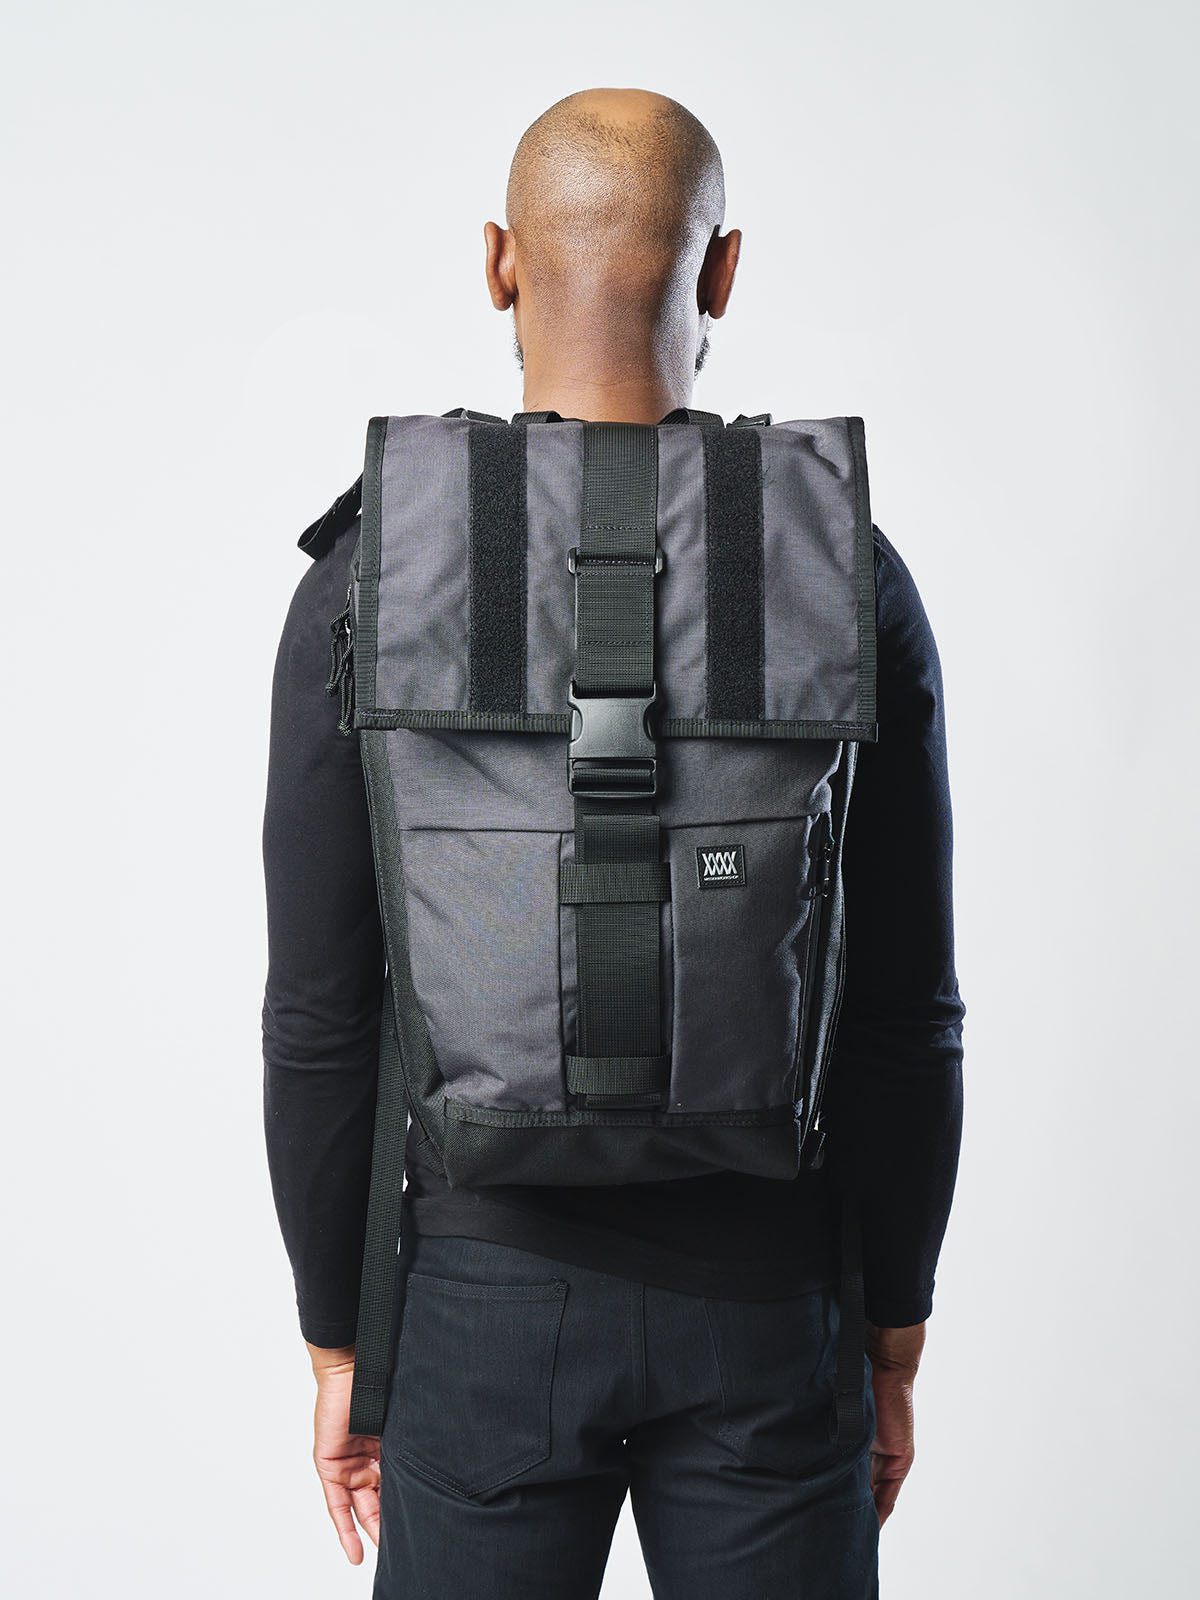 Rambler by Mission Workshop - Weersbestendige tassen & technische kleding - San Francisco & Los Angeles - Gemaakt om lang mee te gaan - Voor altijd gegarandeerd